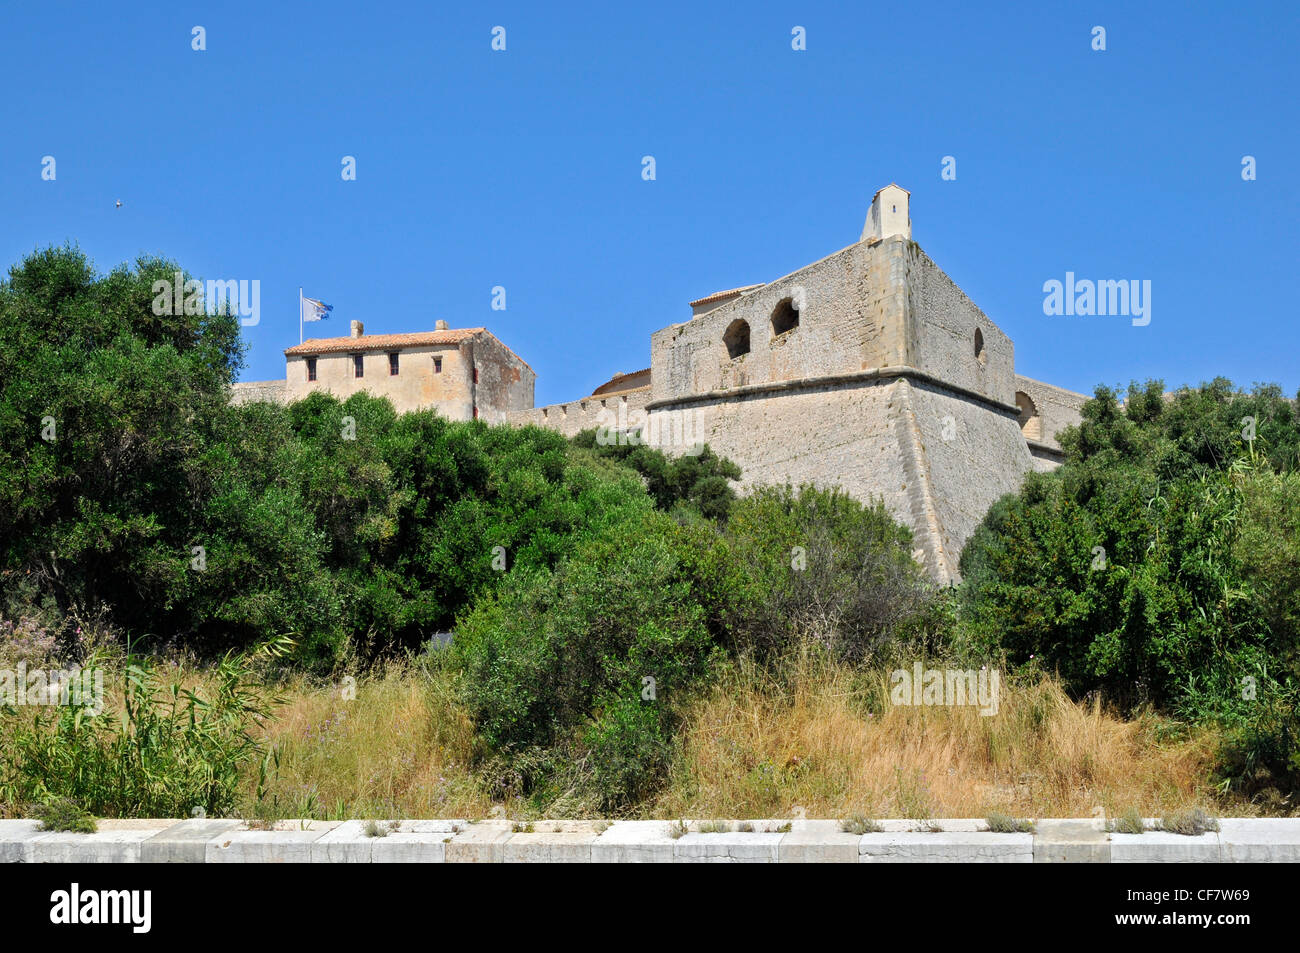 Das Fort Carré von Antibes im Südosten Frankreichs, Alpes-Maritimes Abteilung von Vauban erbaut Stockfoto